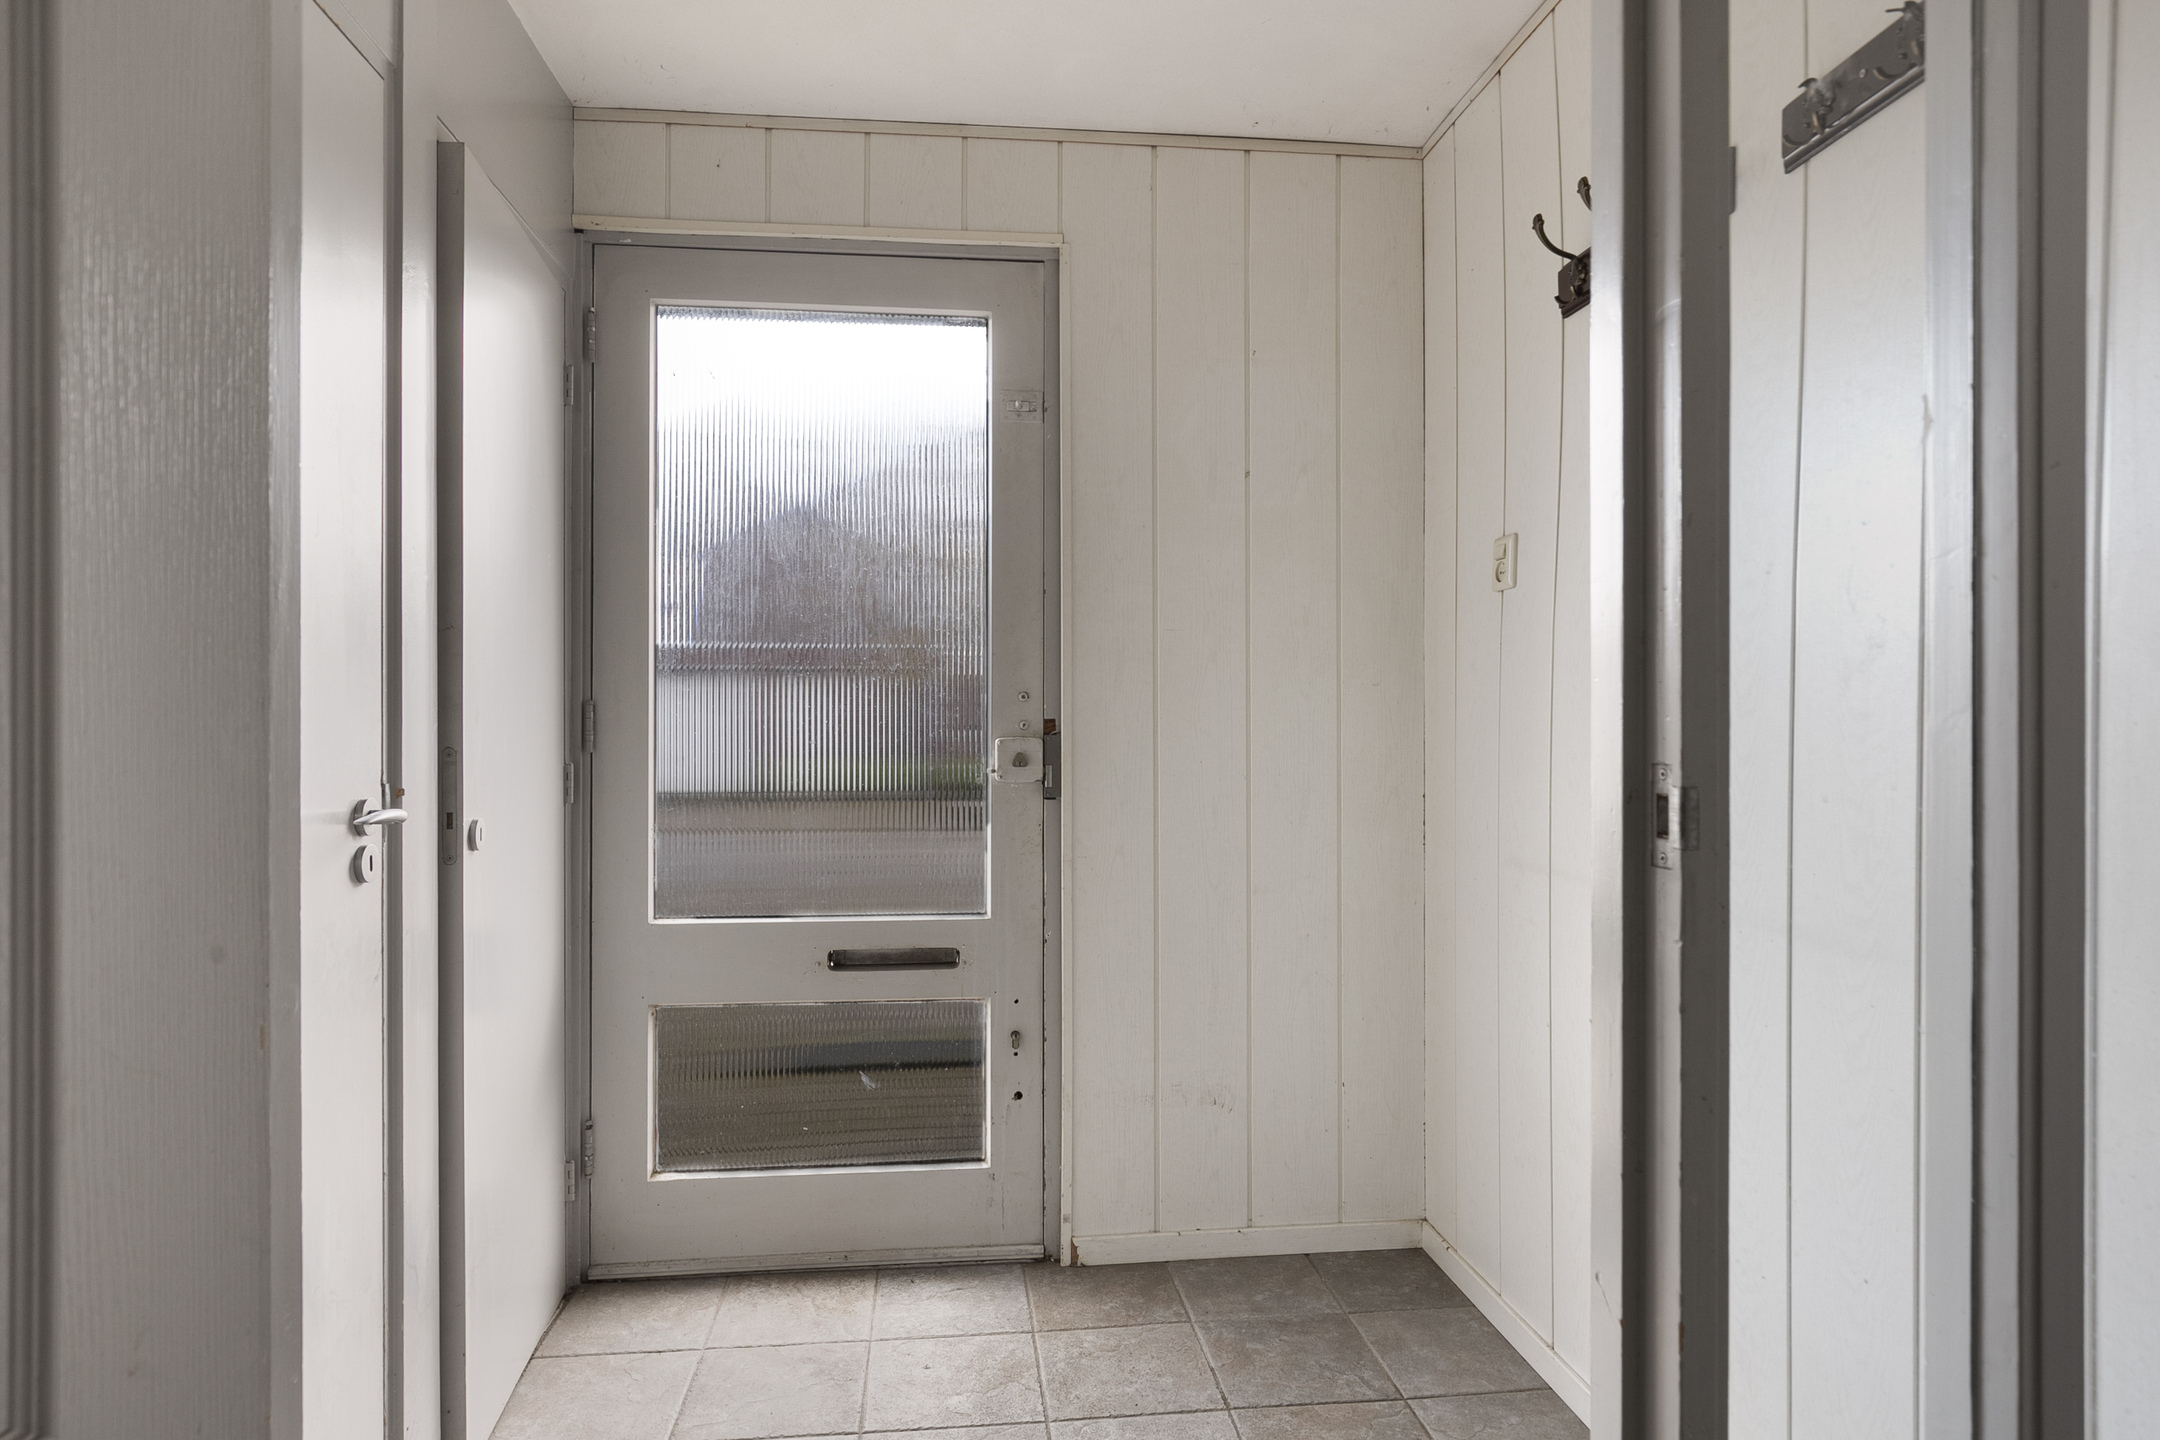 4 Bedrooms Bedrooms, ,1 BathroomBathrooms,Appartement,Te Koop,1267